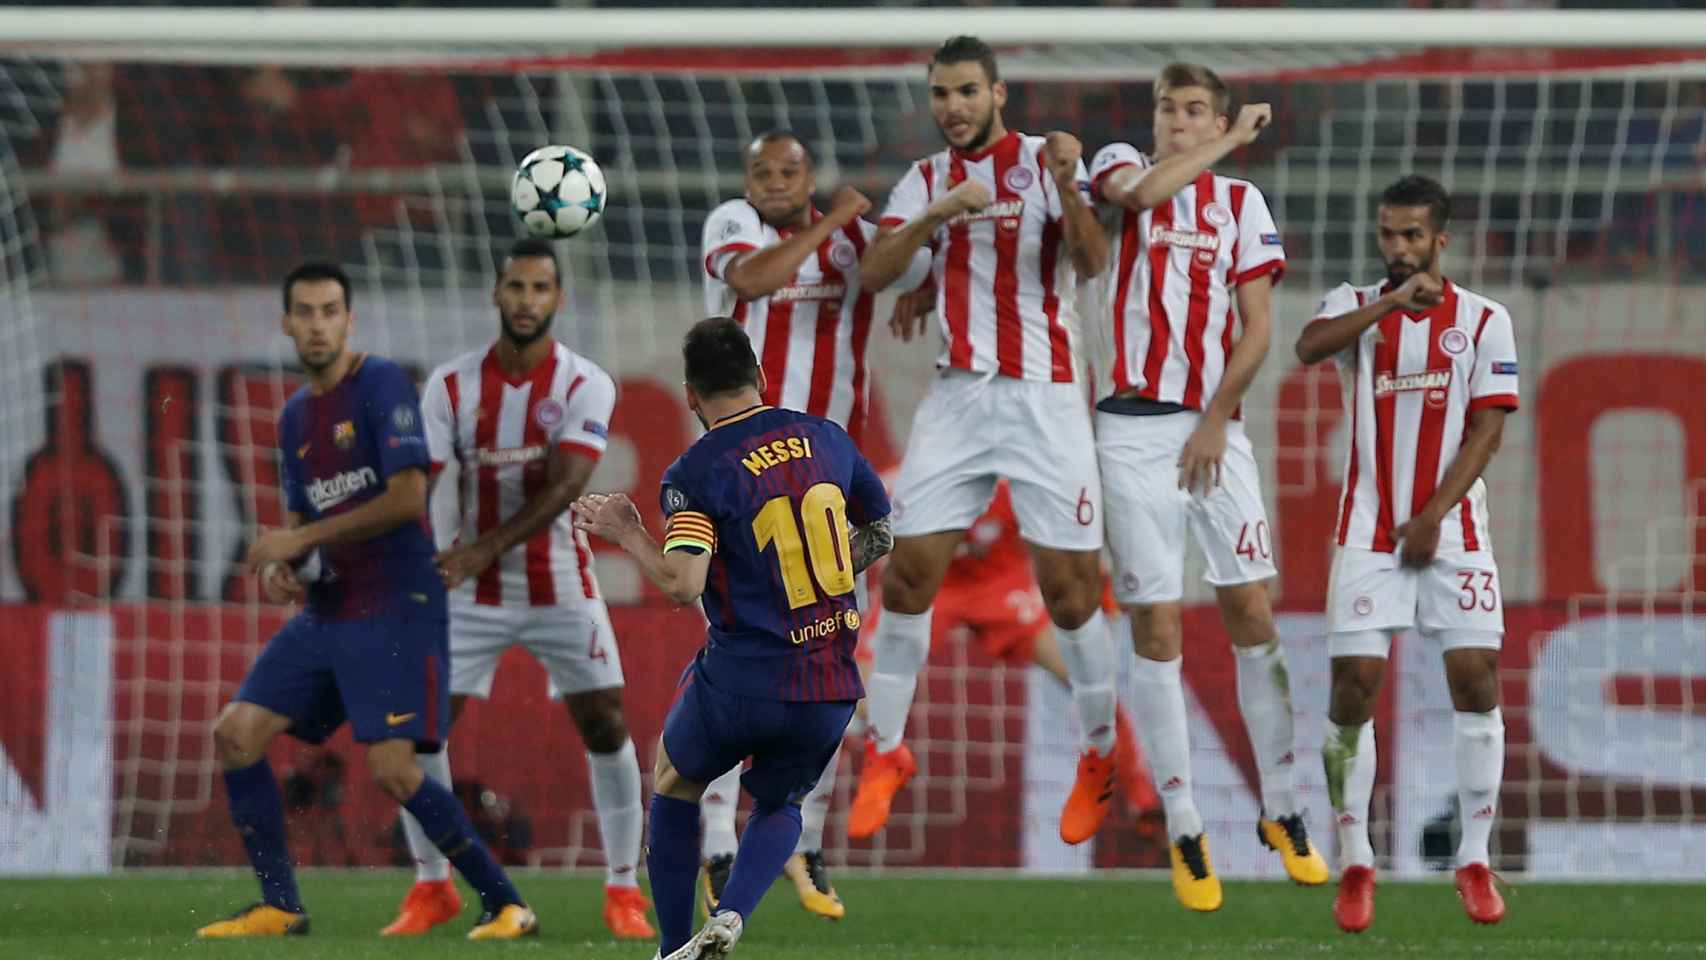 Leo Messi en una jugada a balón parado. / Reuters